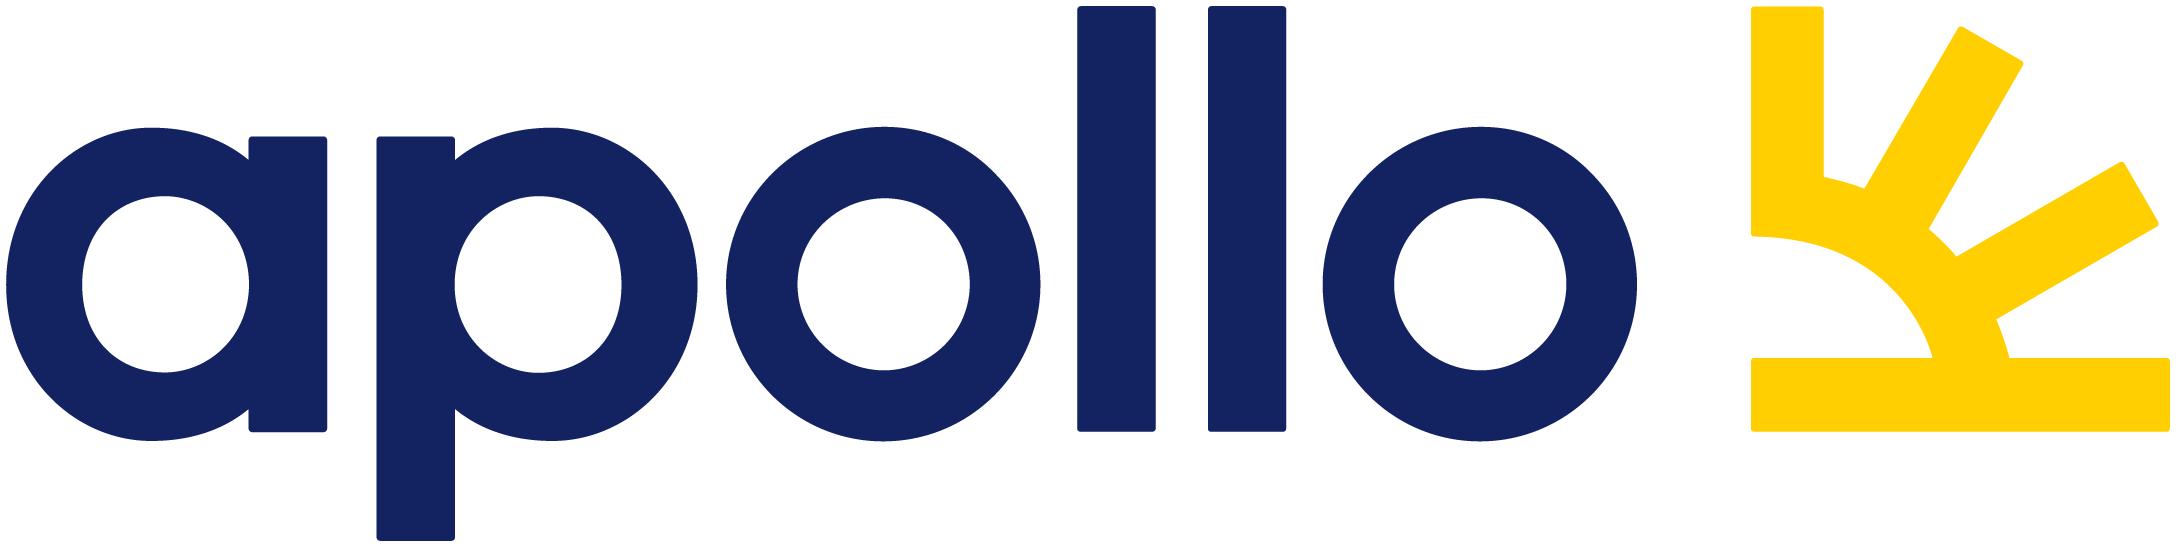 Logo of Apollo